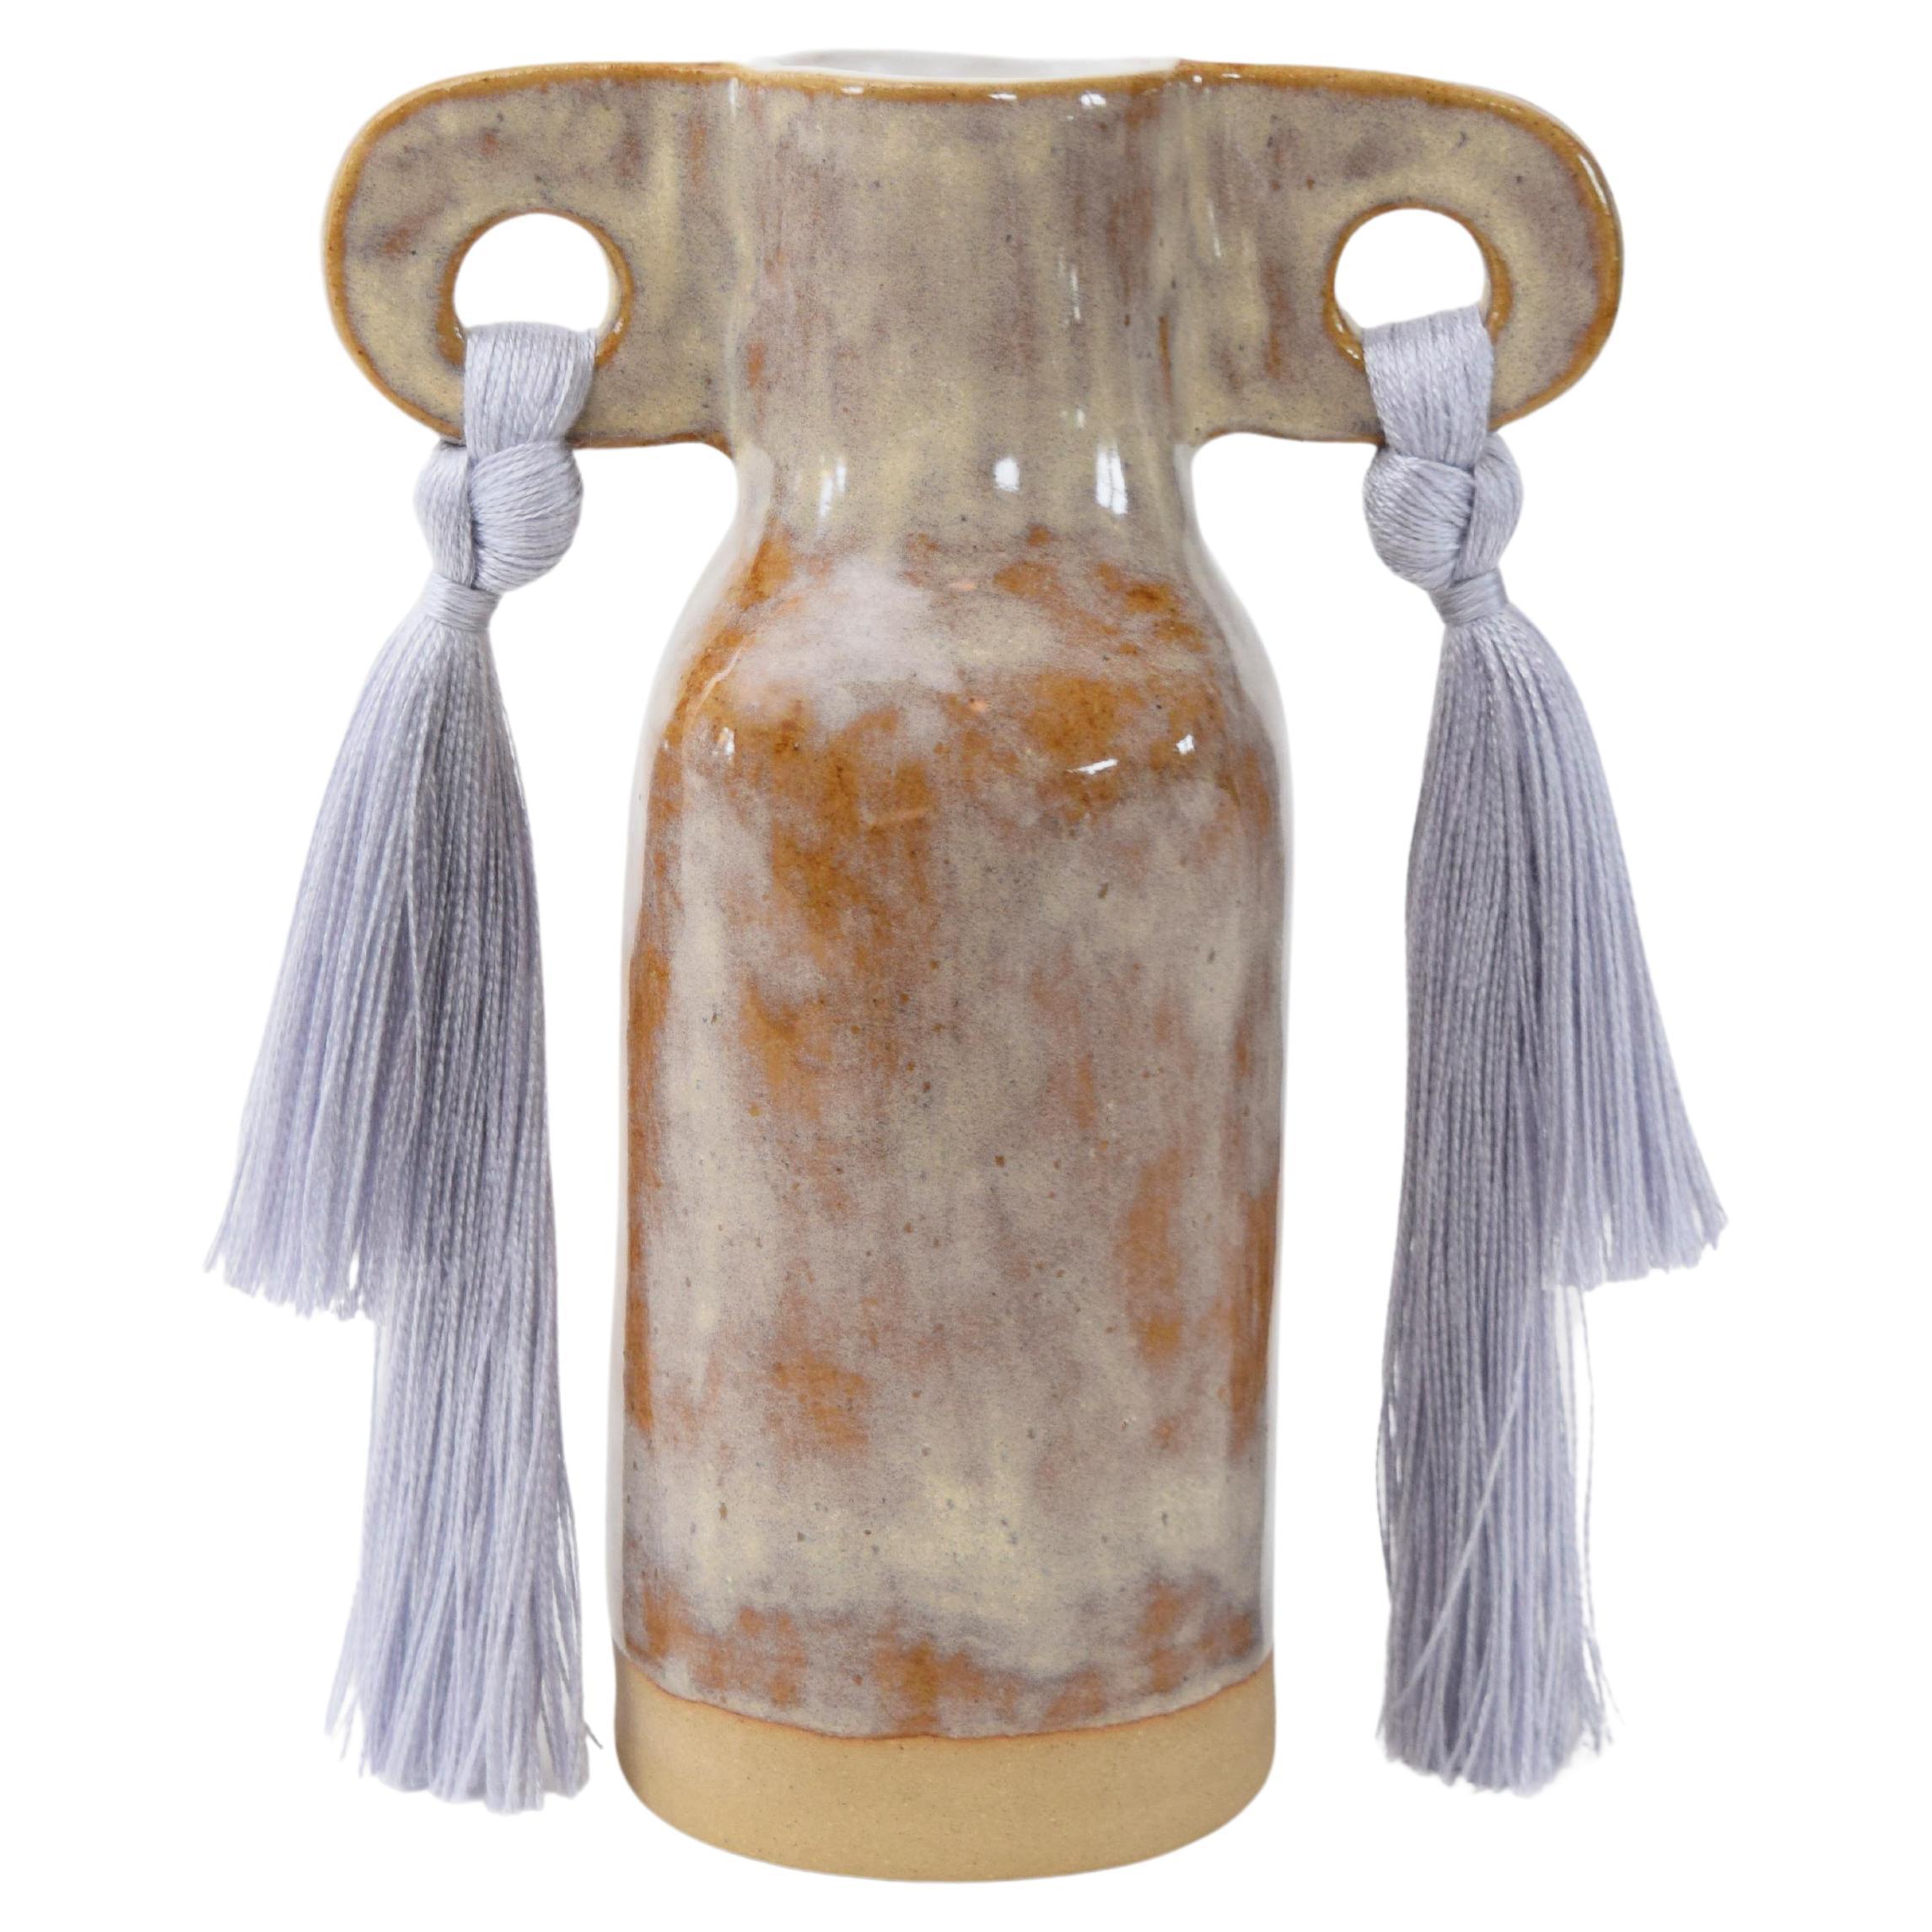 Handgefertigte Keramikvase #606 in grauer Glasur mit Tencel-Kragendetails